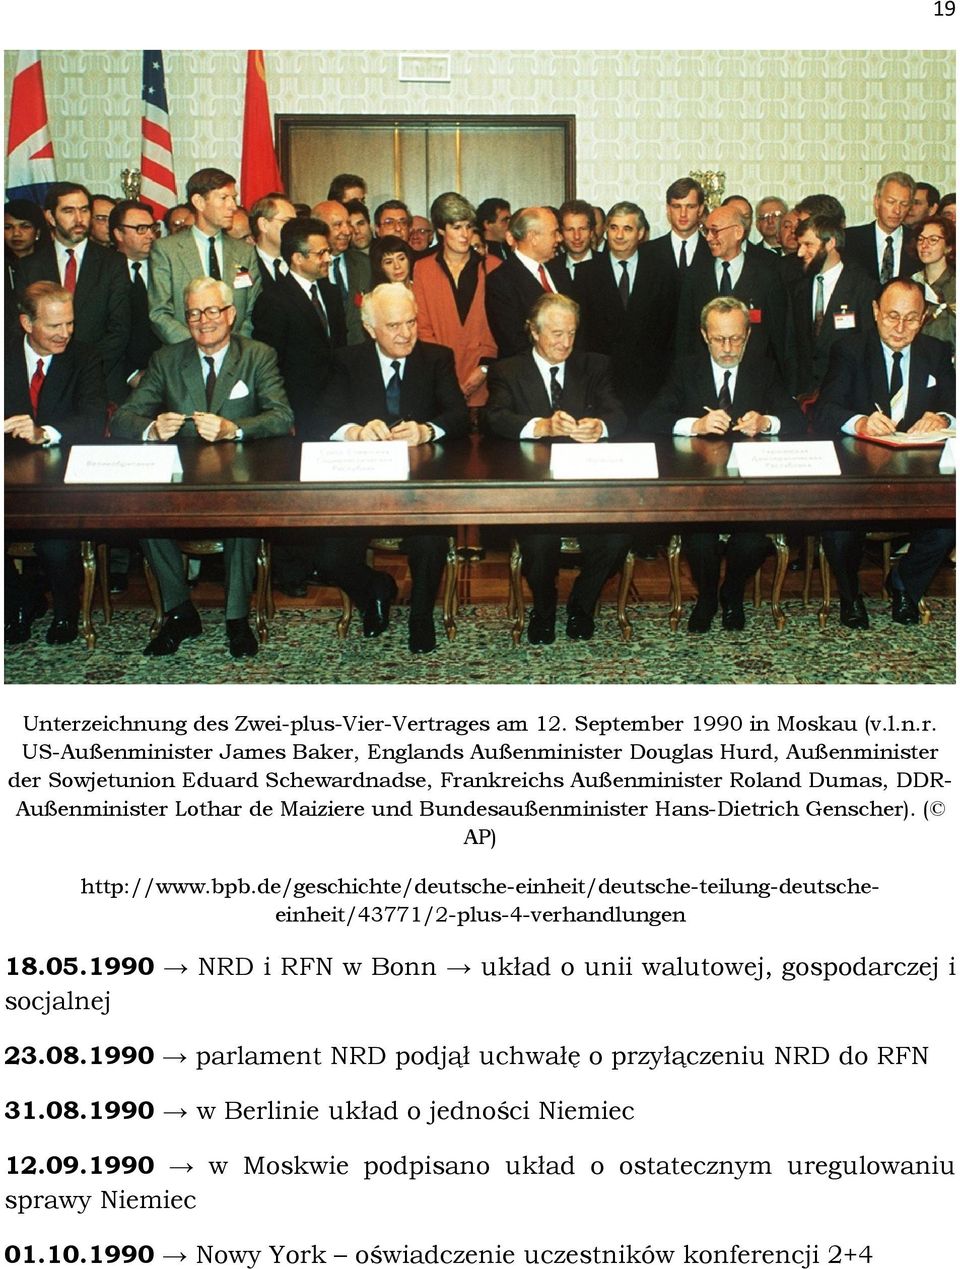 Vertrages am 12. September 1990 in Moskau (v.l.n.r. US-Außenminister James Baker, Englands Außenminister Douglas Hurd, Außenminister der Sowjetunion Eduard Schewardnadse, Frankreichs